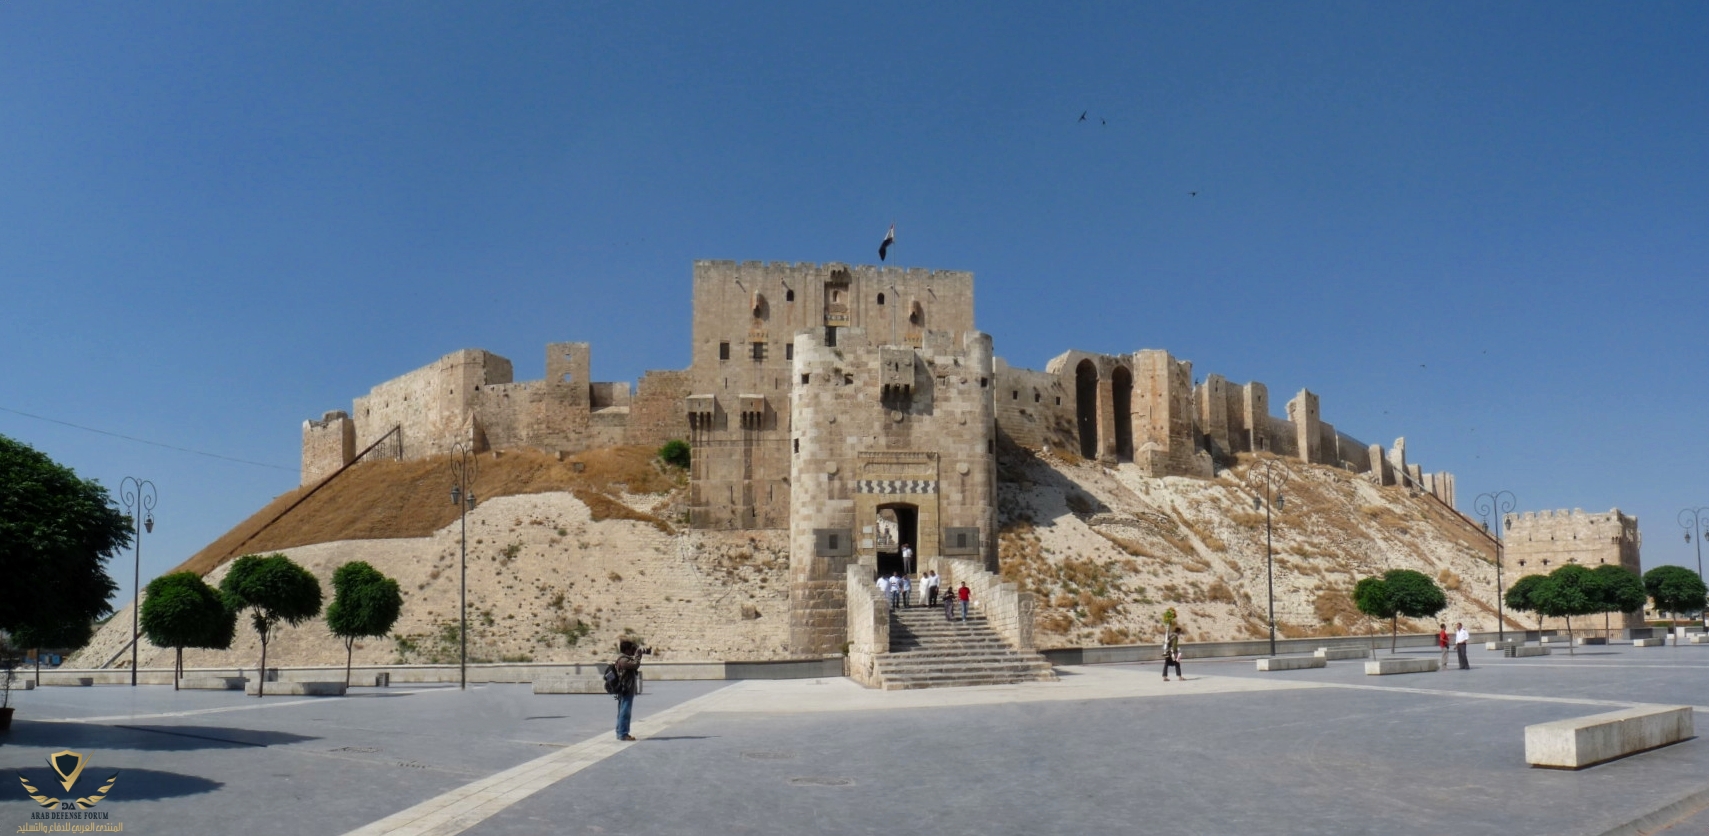 Citadel_of_Aleppo.jpg